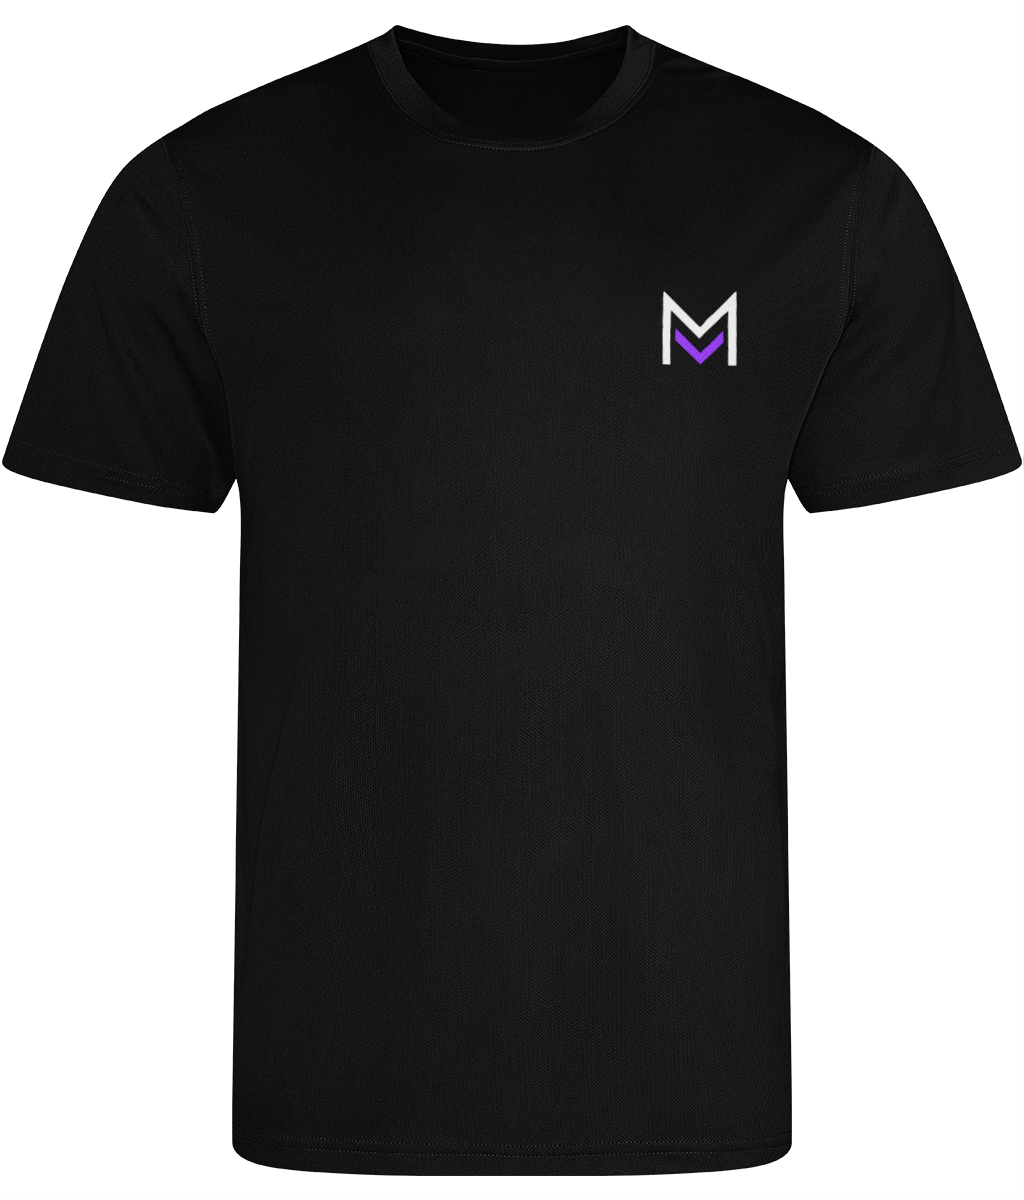 Mana Merch Men's Cool Sports T-shirt